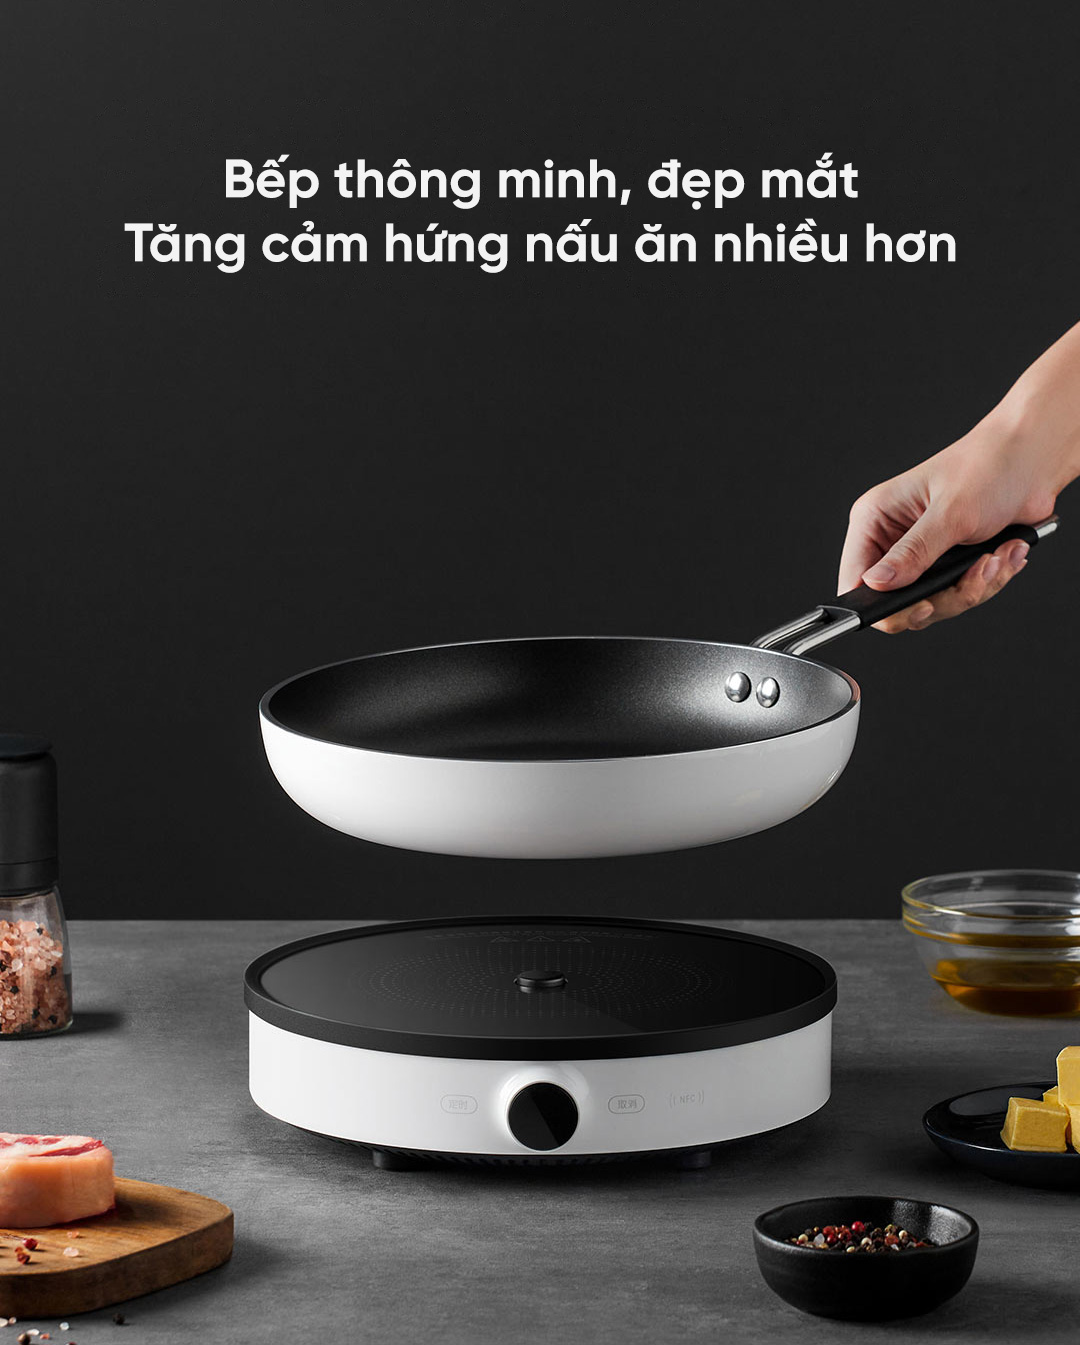 Bếp từ Mijia khác những chiếc bếp thông thường khác về những tính năng thông minh như kết nối NFC hay bề ngoài đẹp mắt. Từ đó tăng hưng phấn hơn cho người nấu nướng